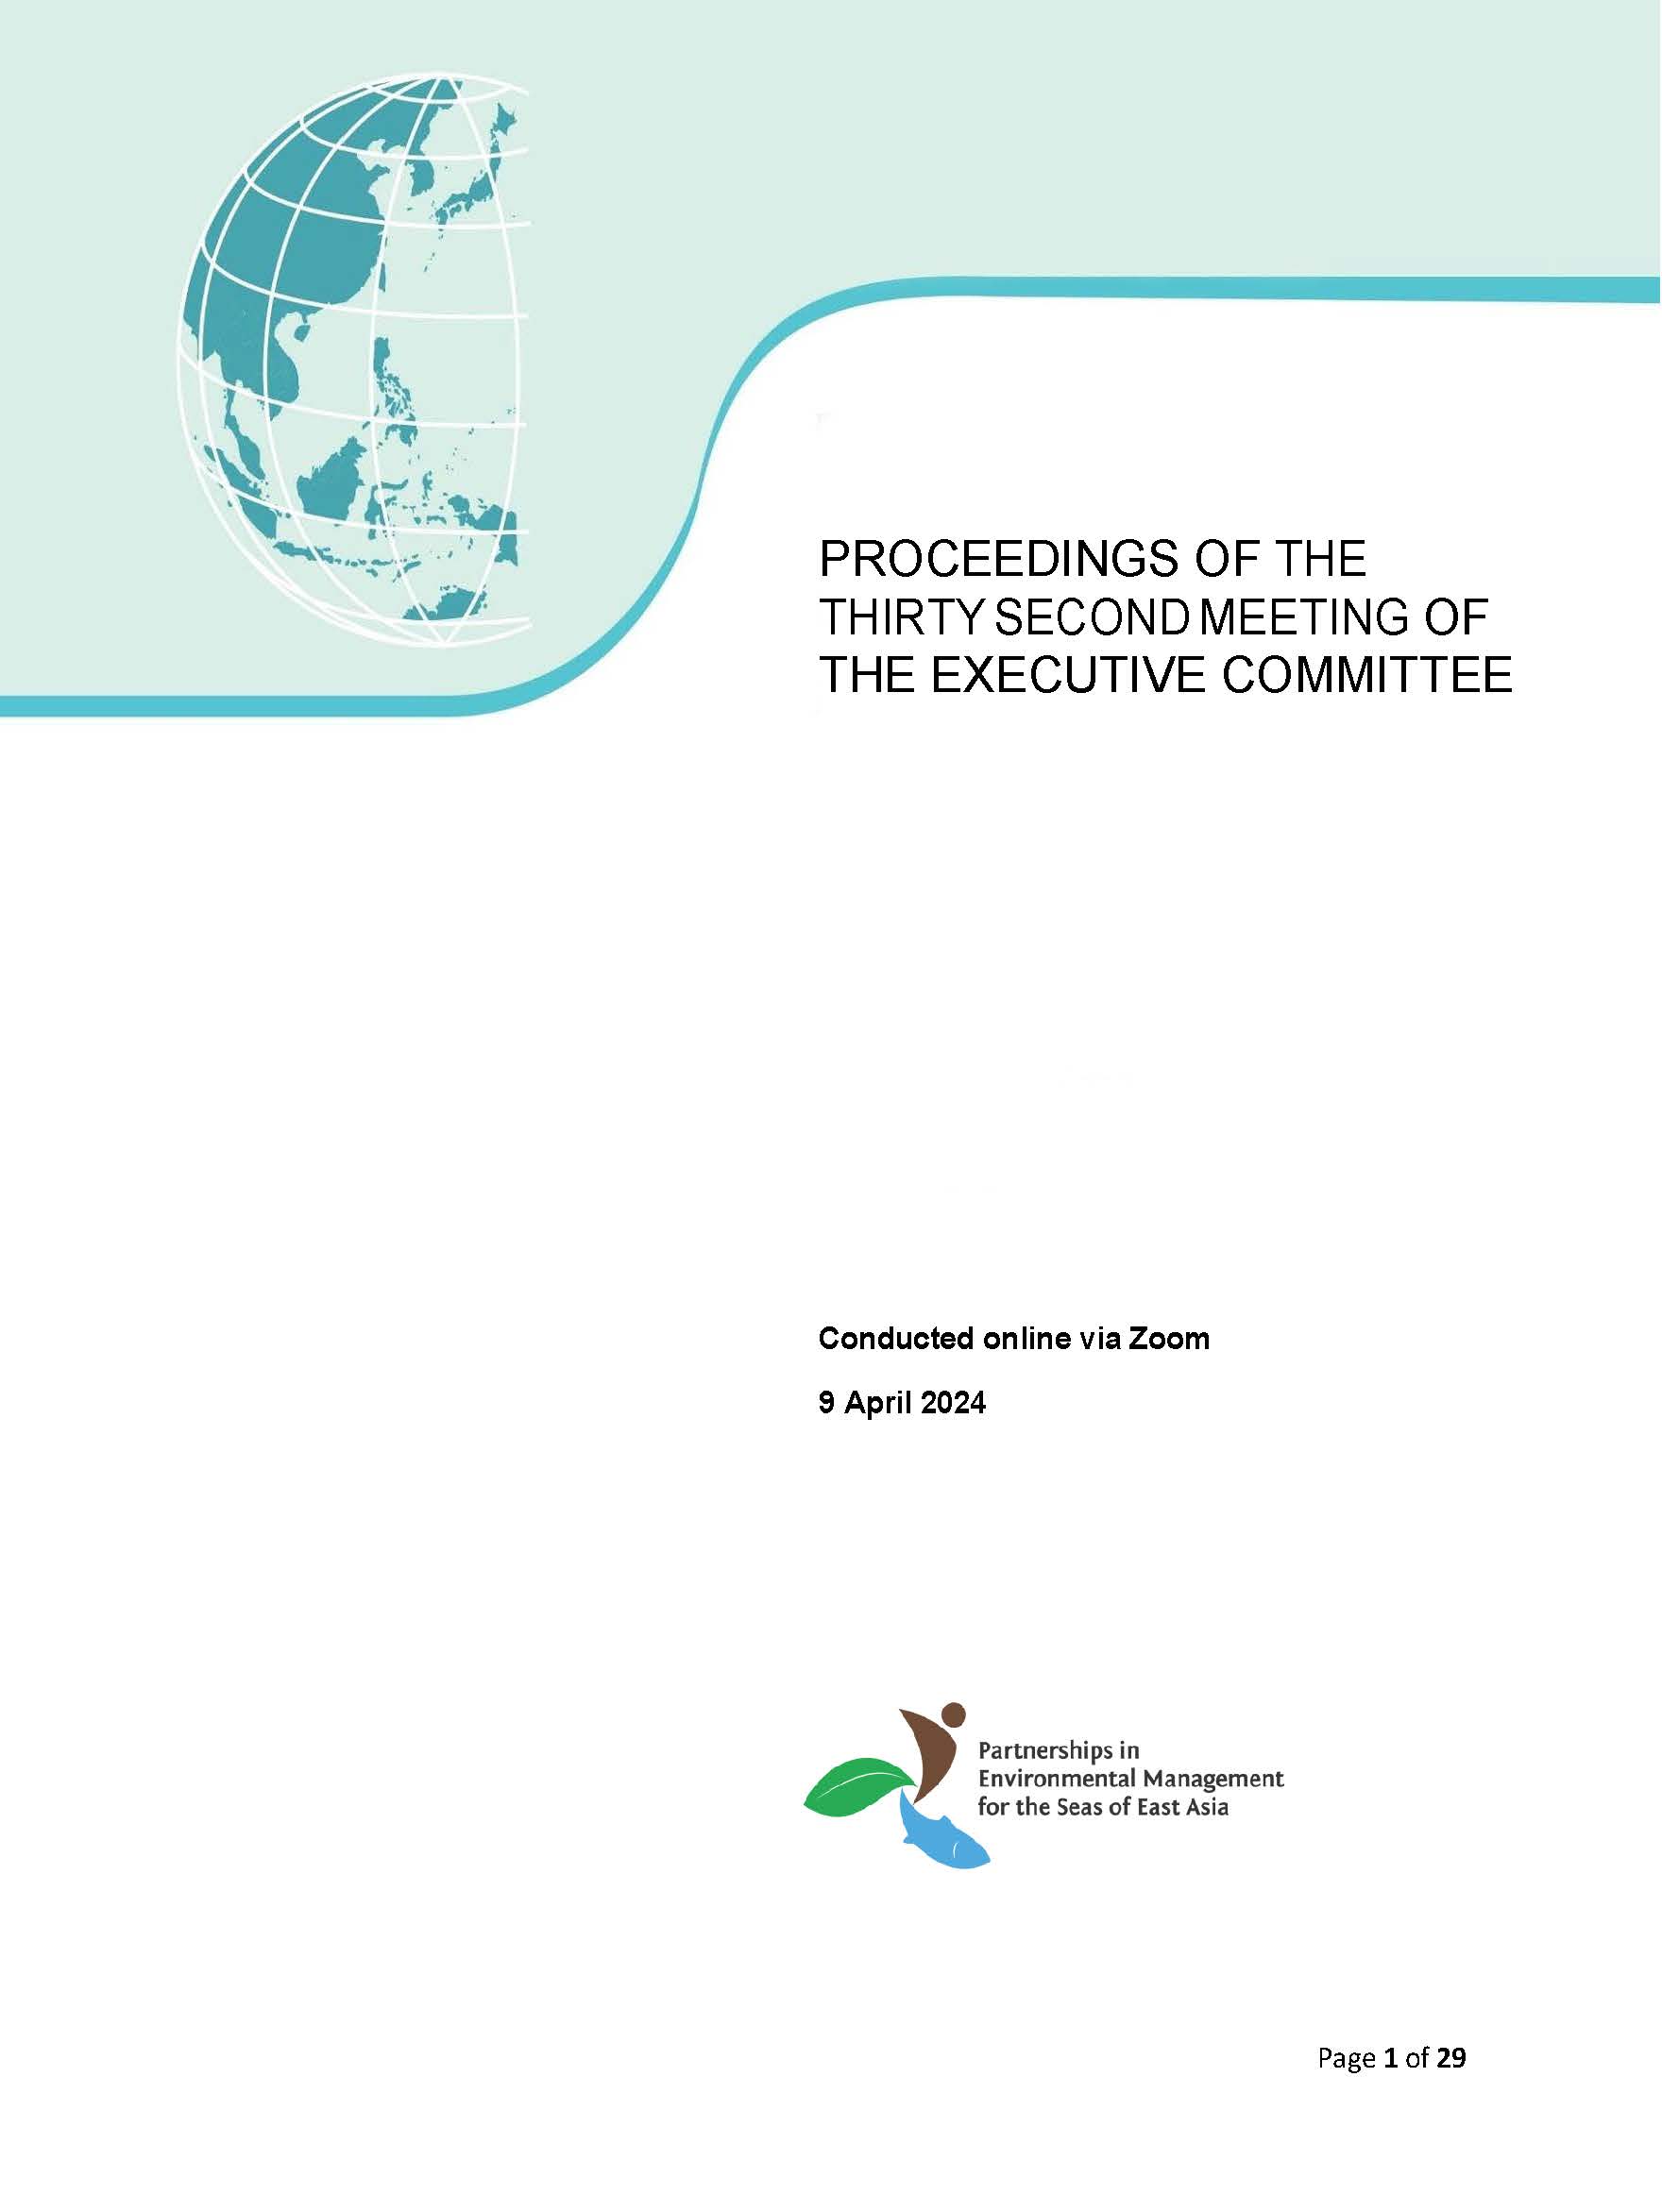 Proceedings of the 32nd EC Meeting